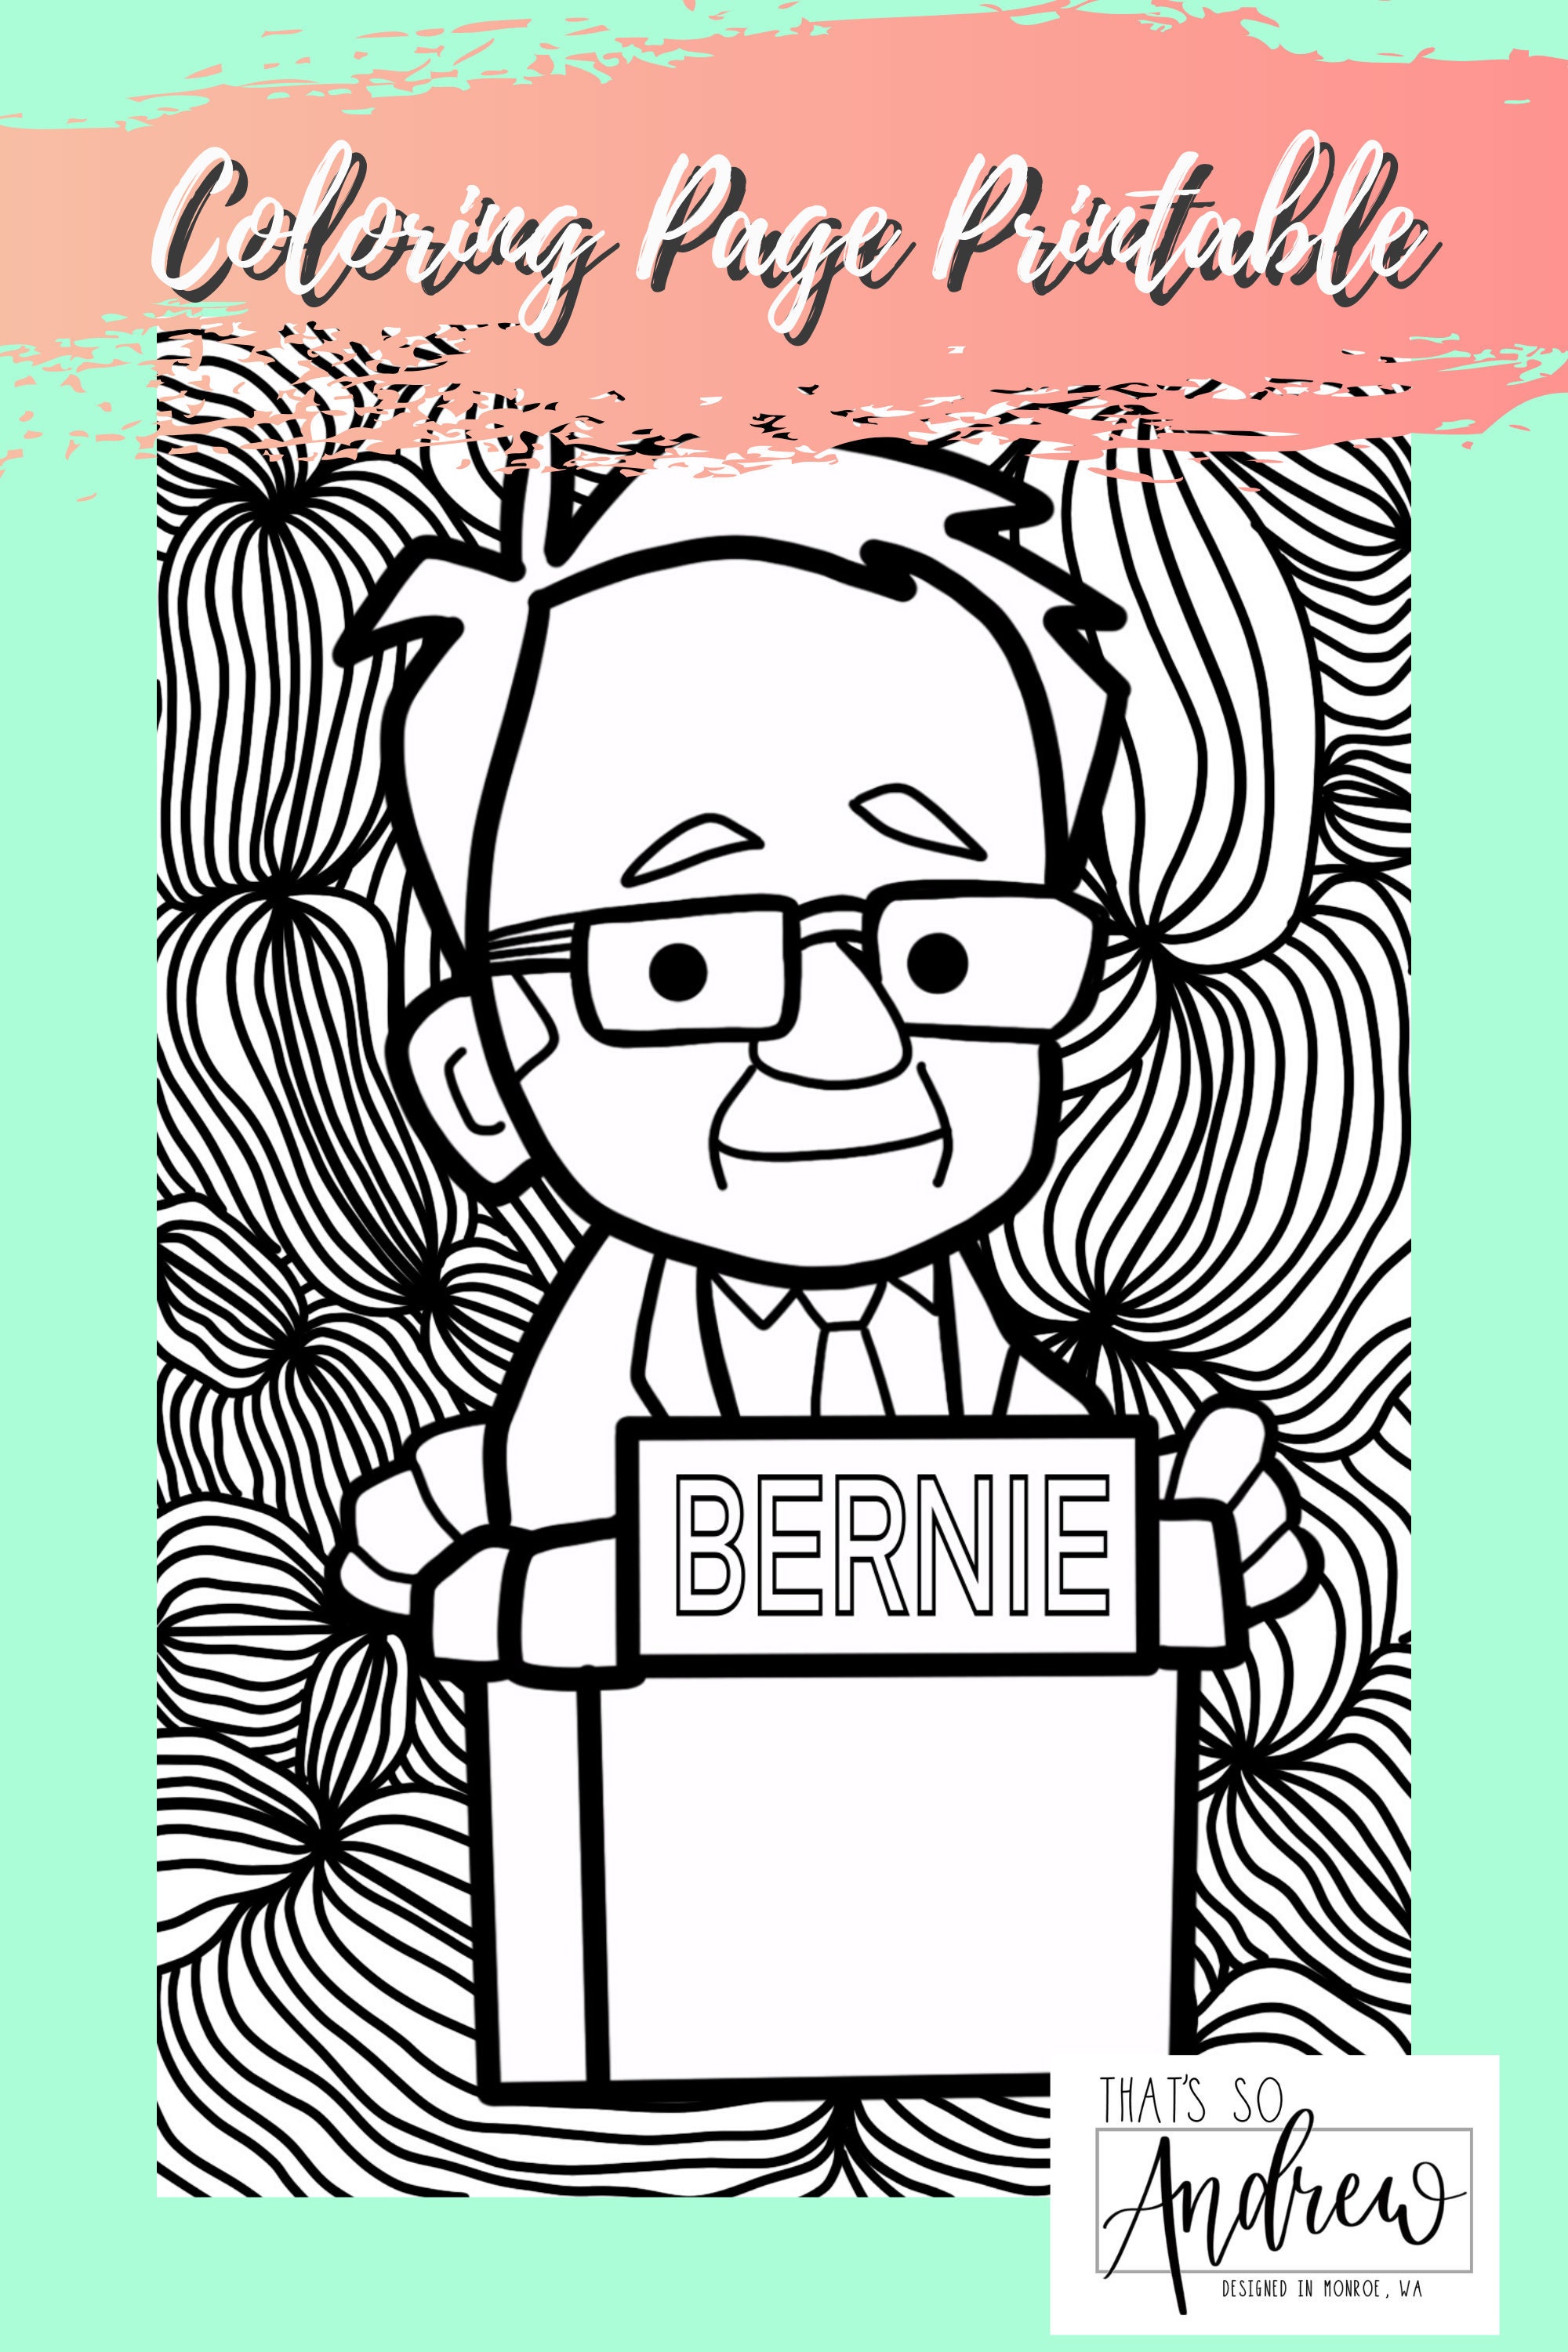 Bernie Sanders Coloring Page Printable | Etsy